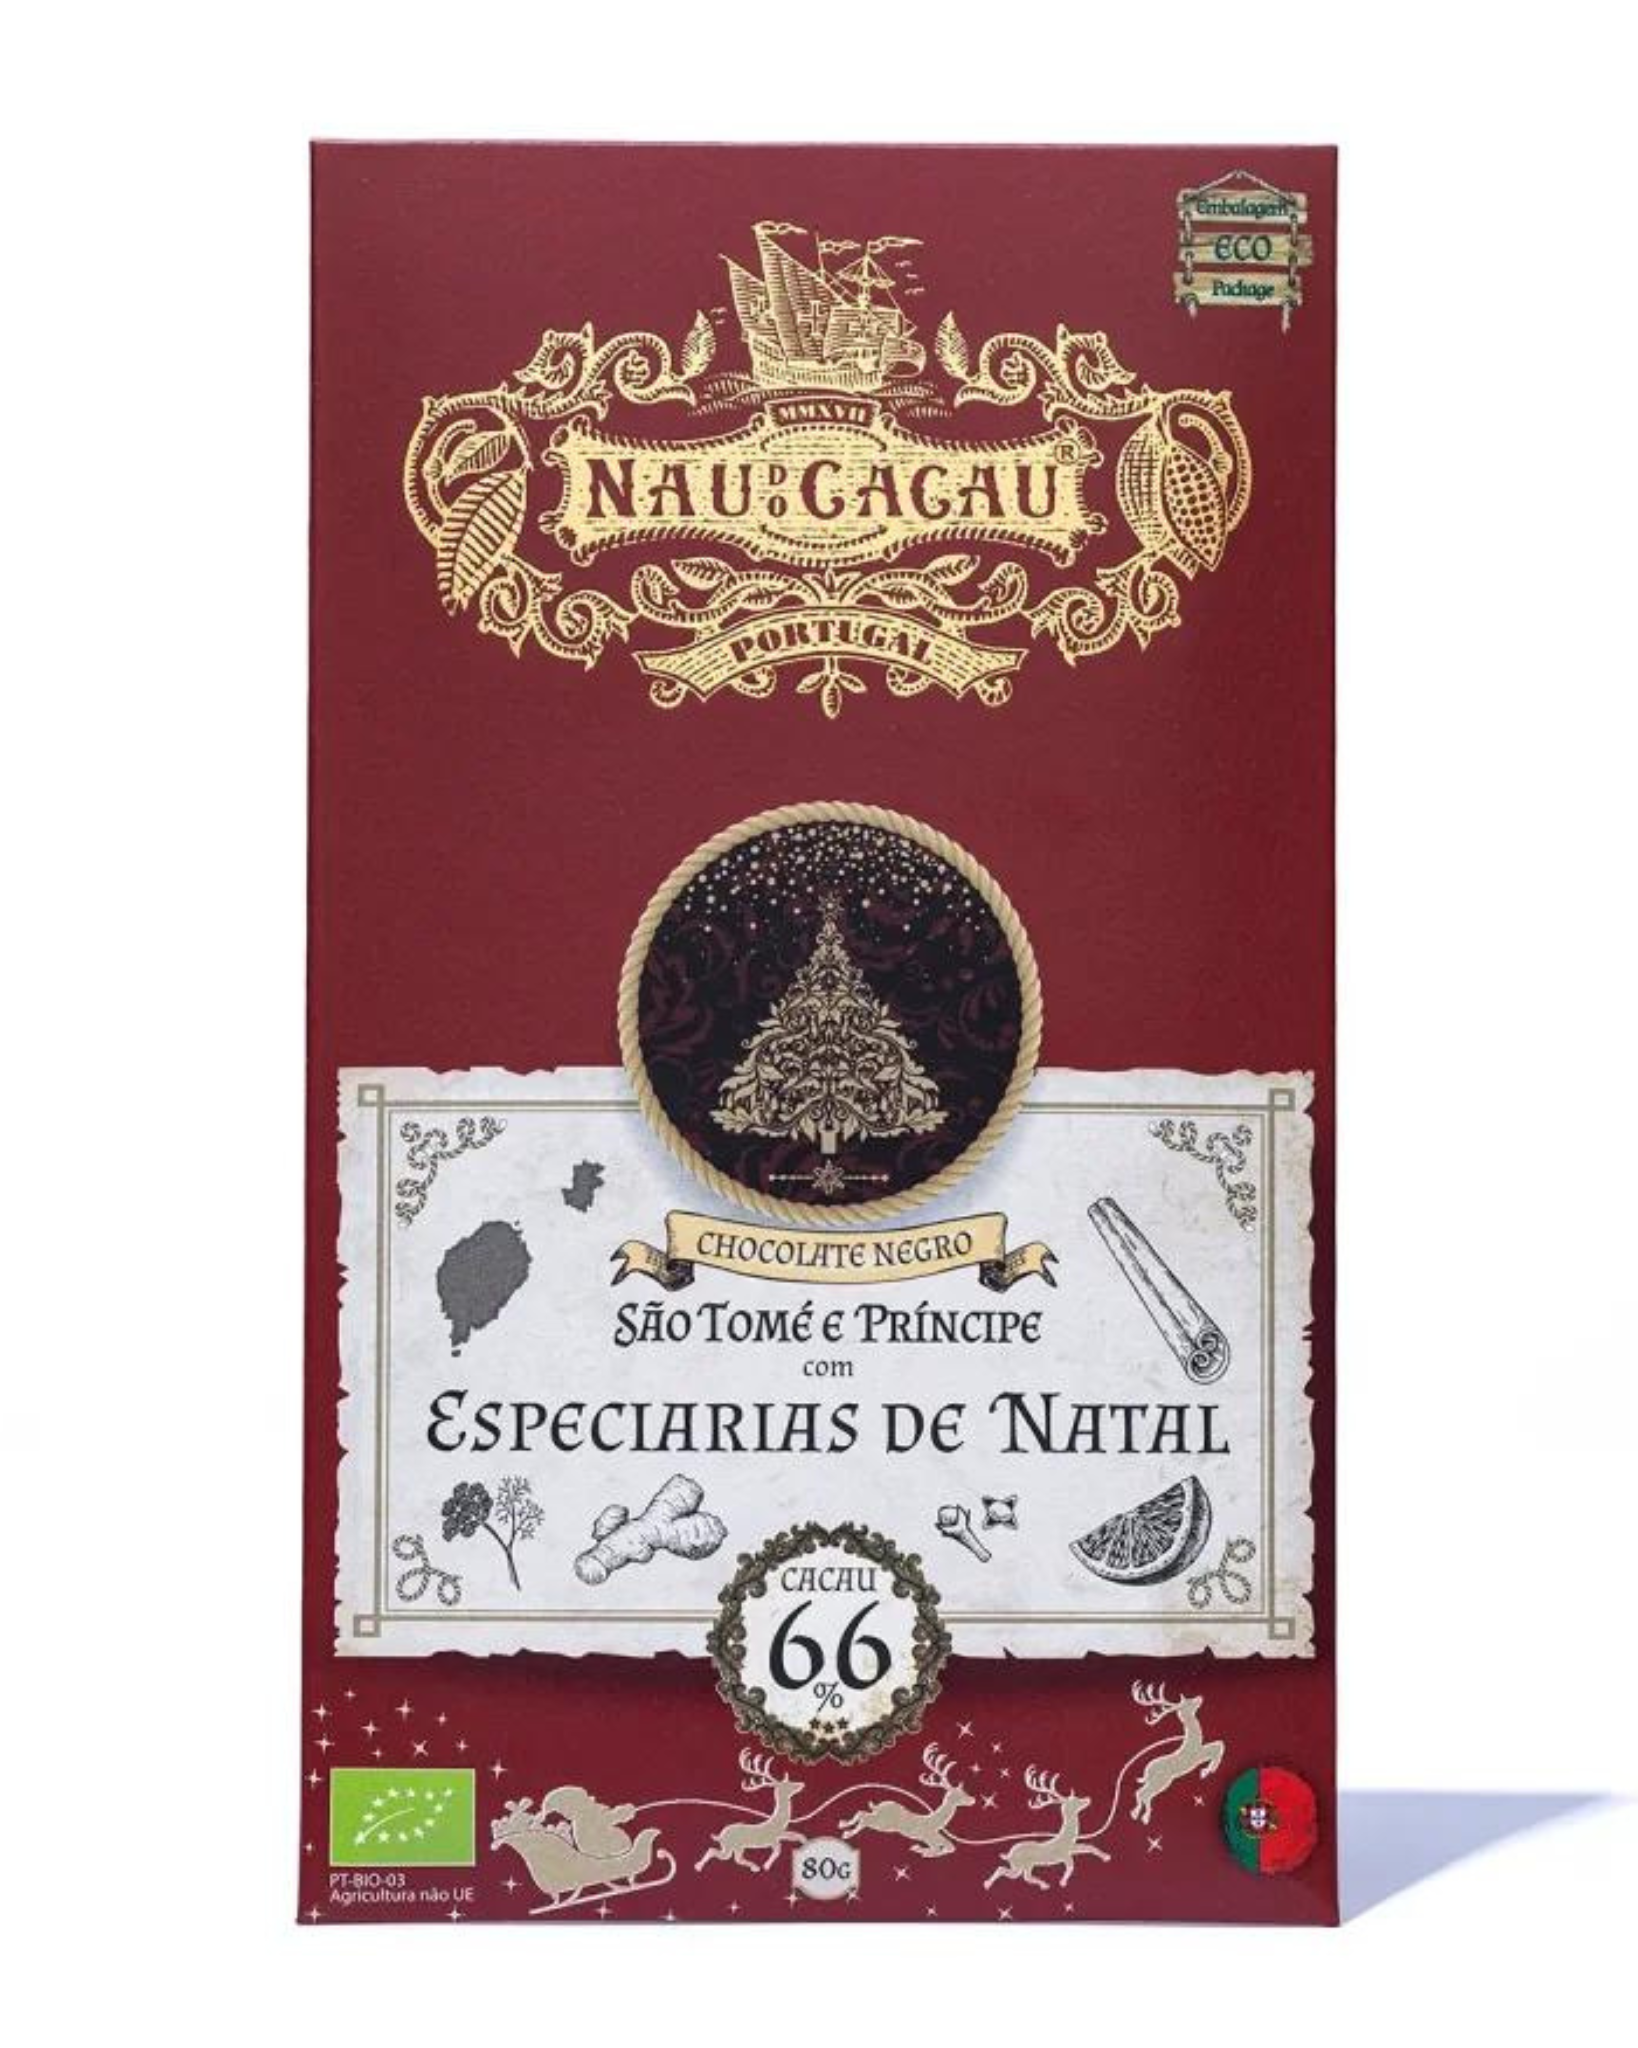 Tablete Chocolate Negro Biológico S. Tomé e Príncipe c/ Especiarias de Natal Nau do Cacau 80g